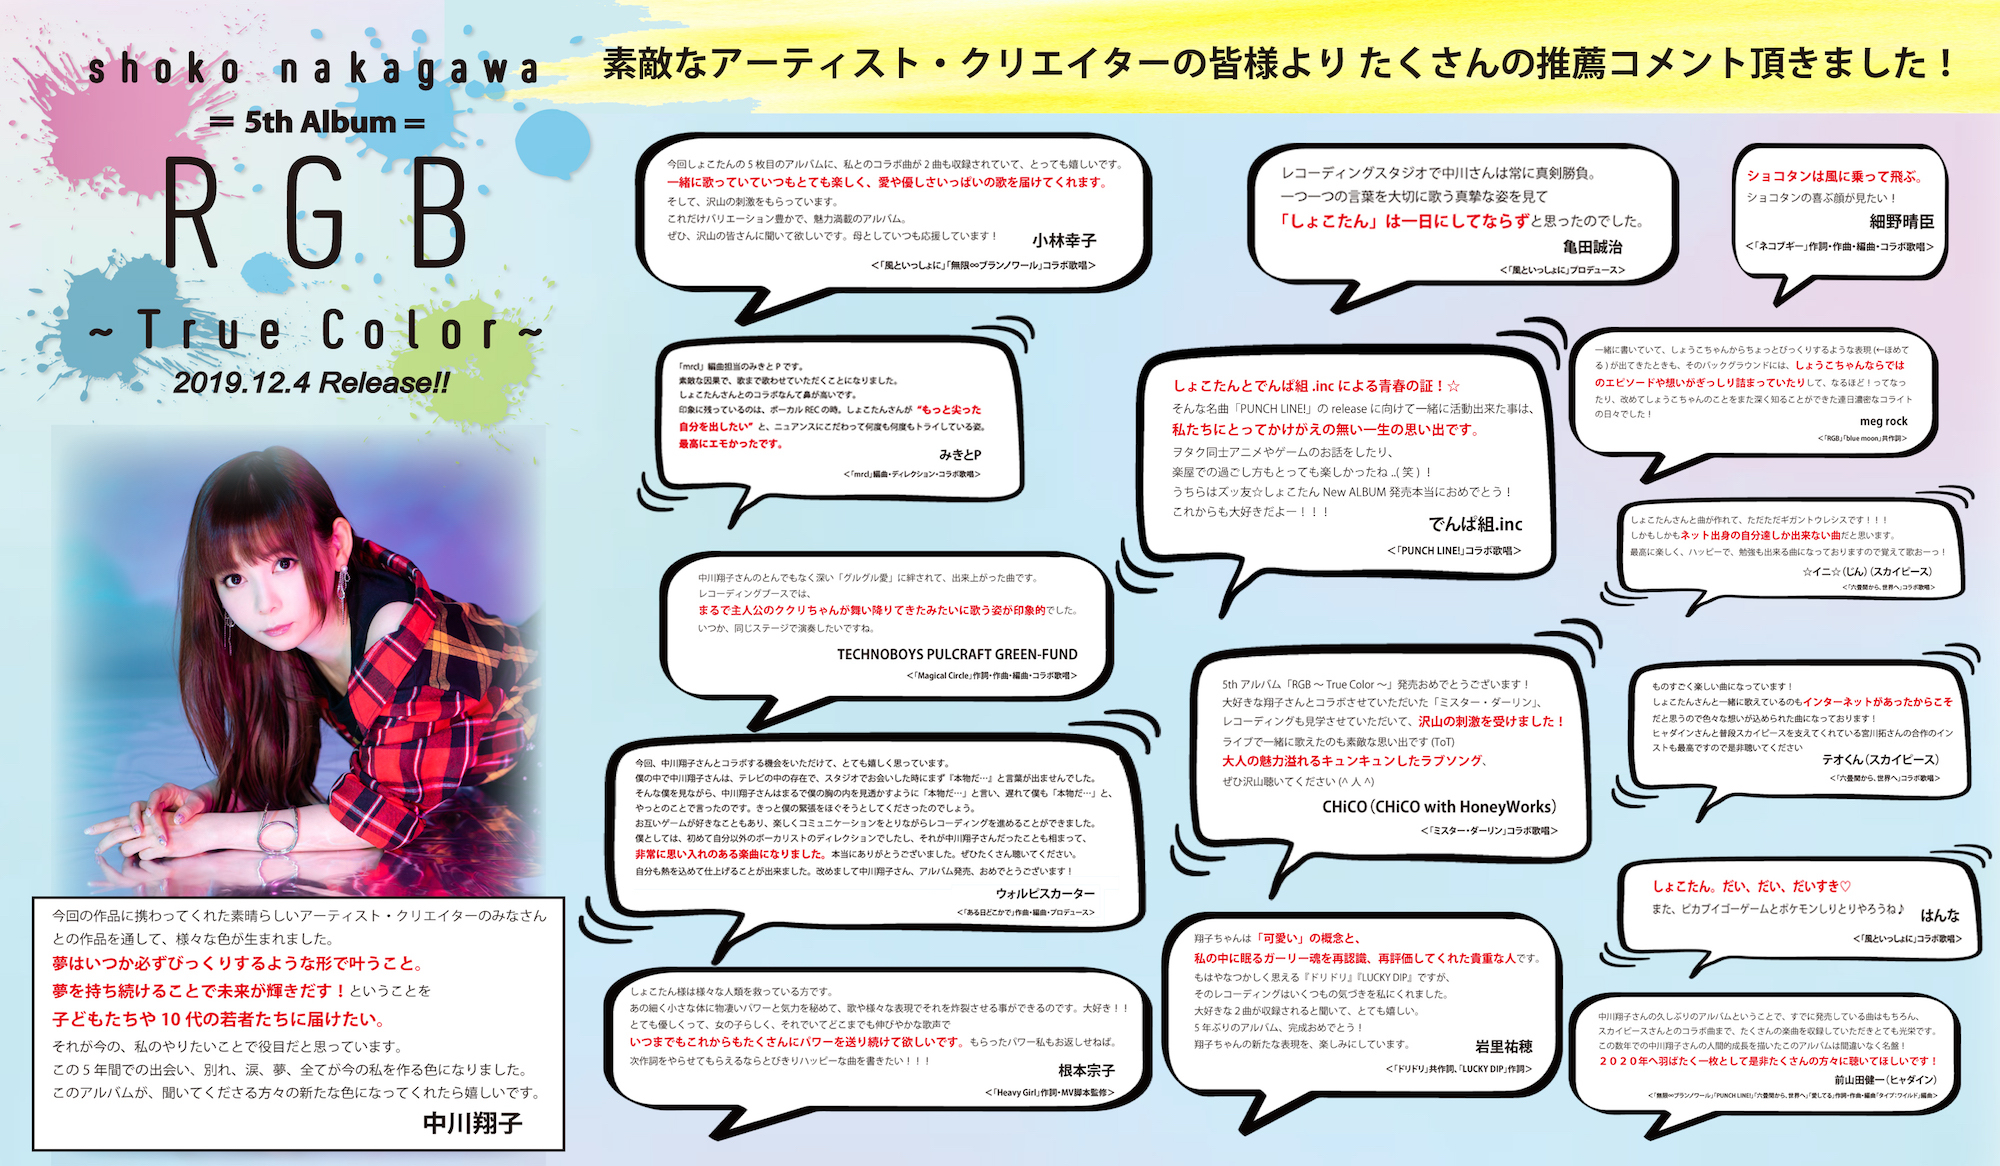 中川翔子 新アルバムにスカイピース みきとp ウォルピスカーターとのコラボ曲を収録 アルバム推薦コメントも公開に Spice エンタメ特化型情報メディア スパイス